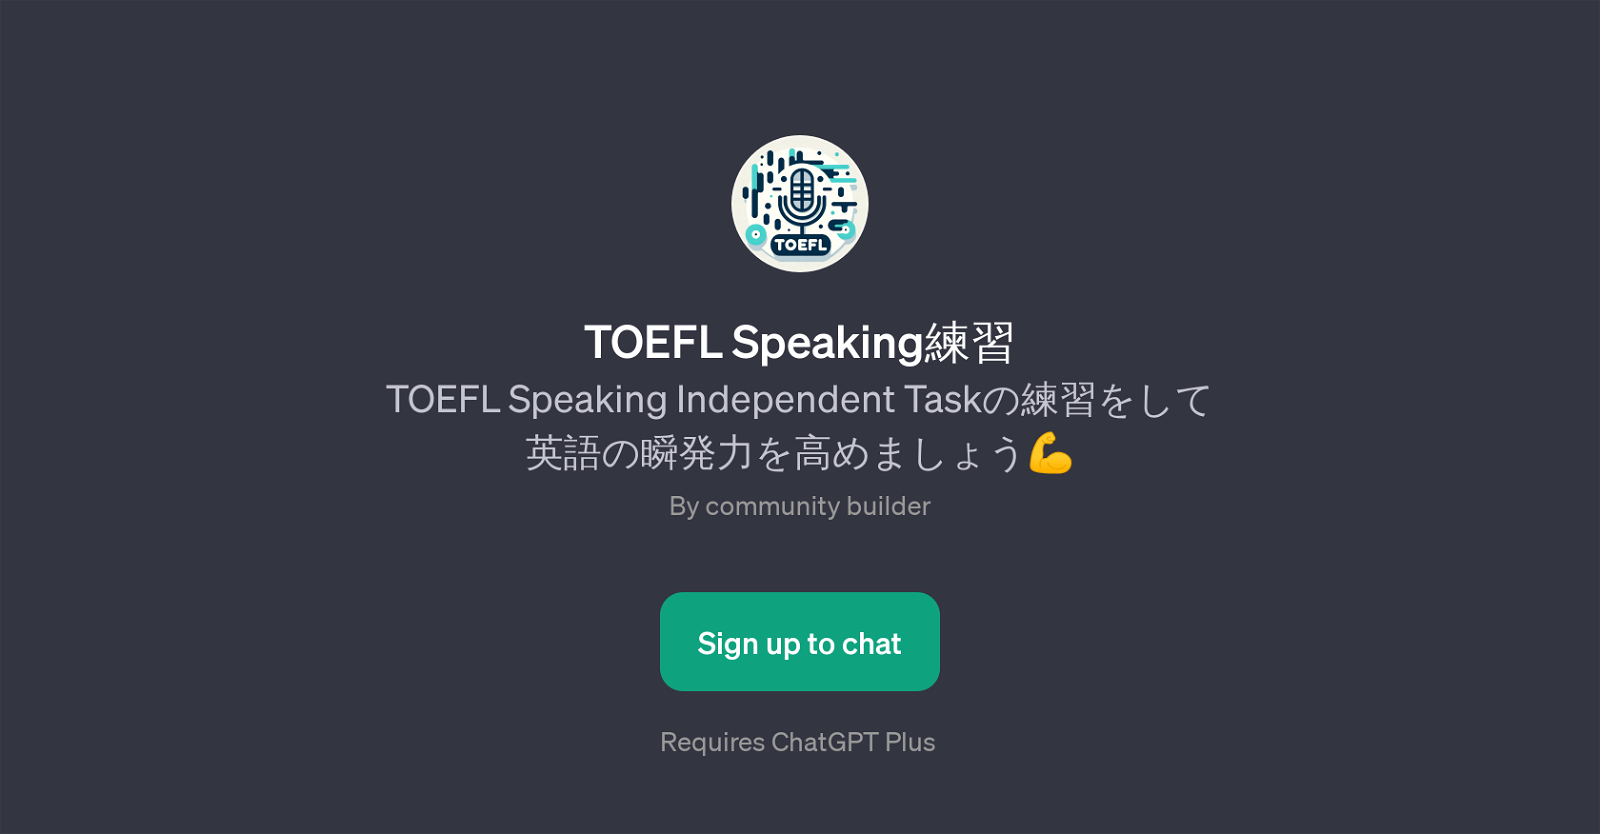 TOEFL Speaking website